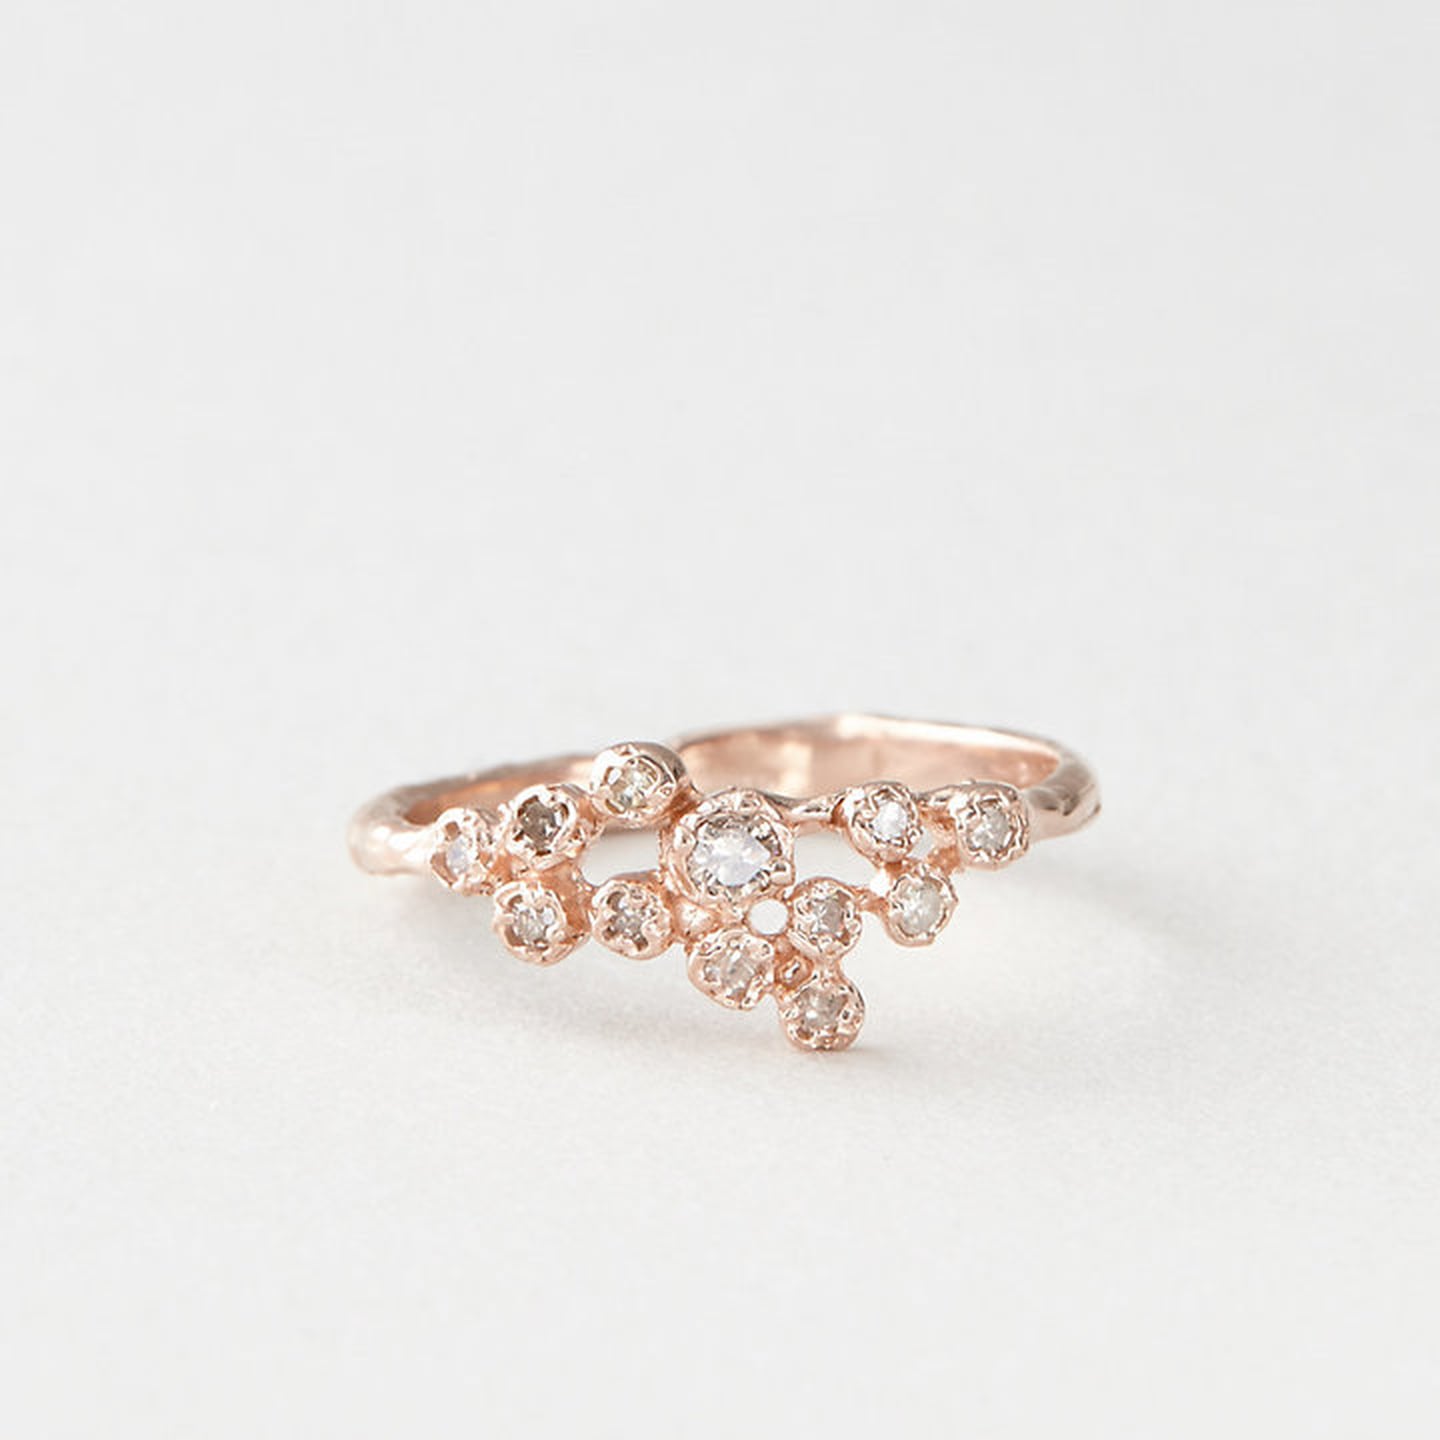 Rose Gold Wedding Ring Ideas | POPSUGAR Fashion